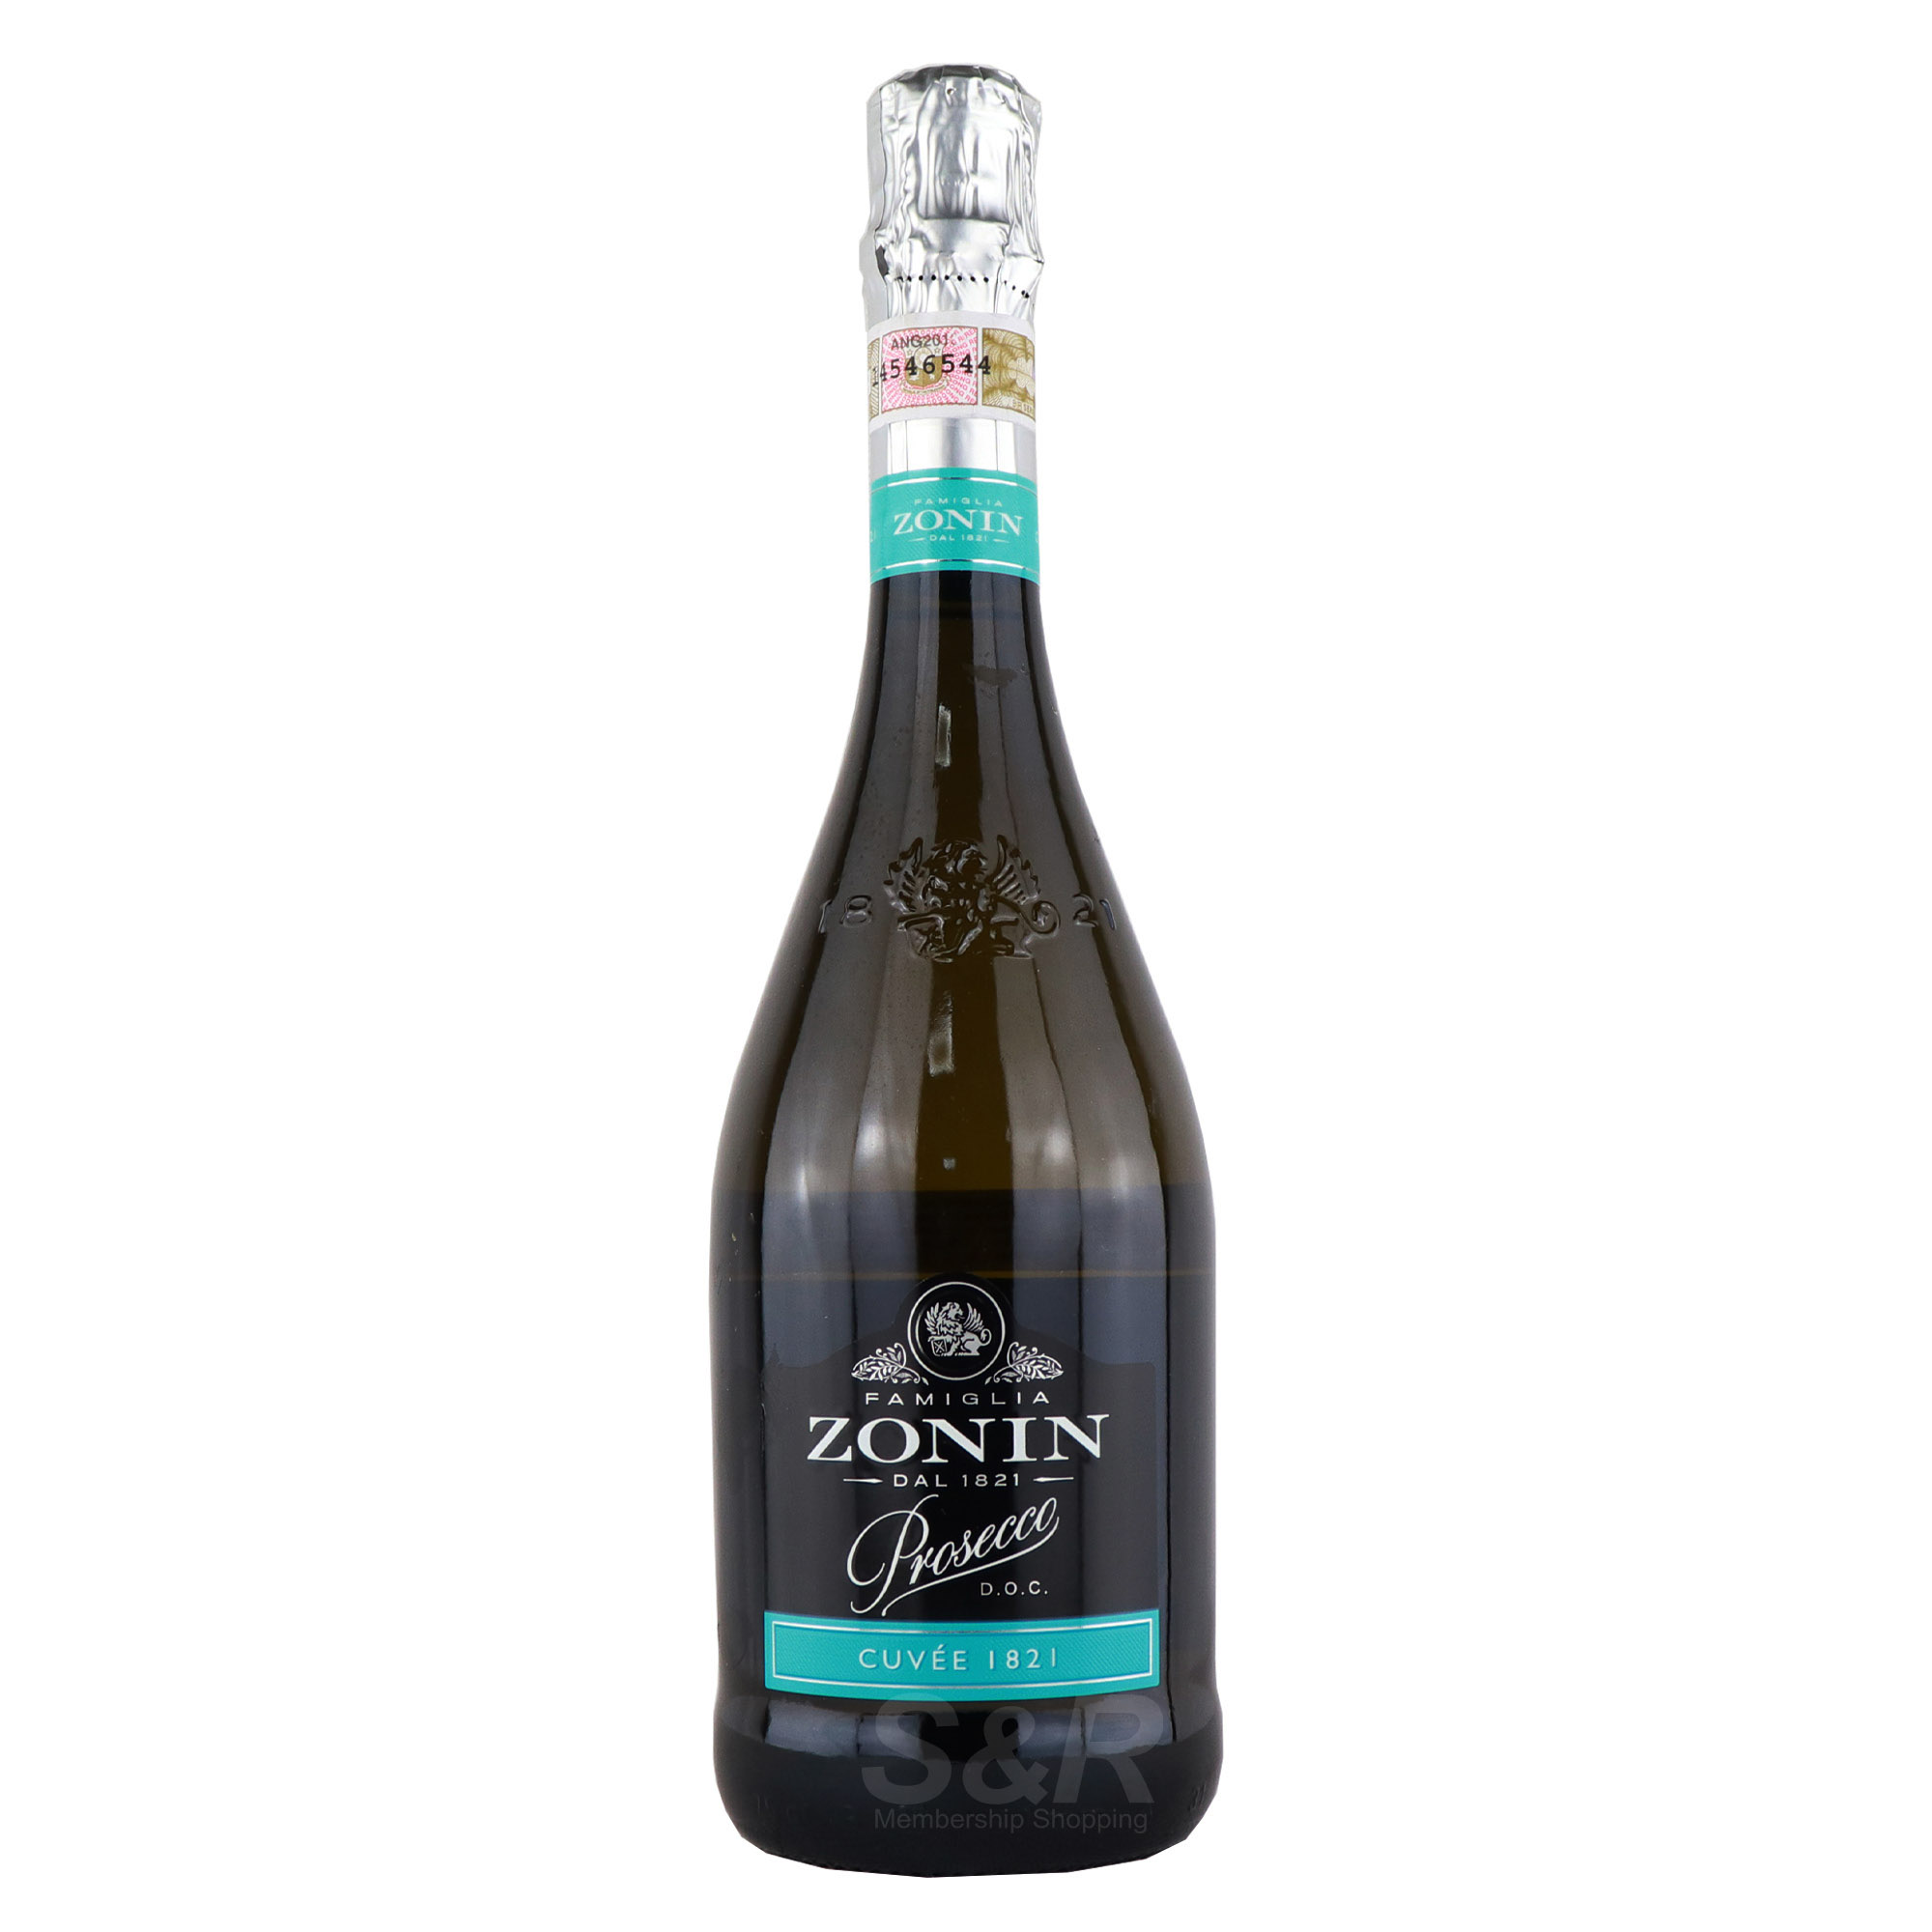 Famiglia Zonin Prosecco White Wine 750mL